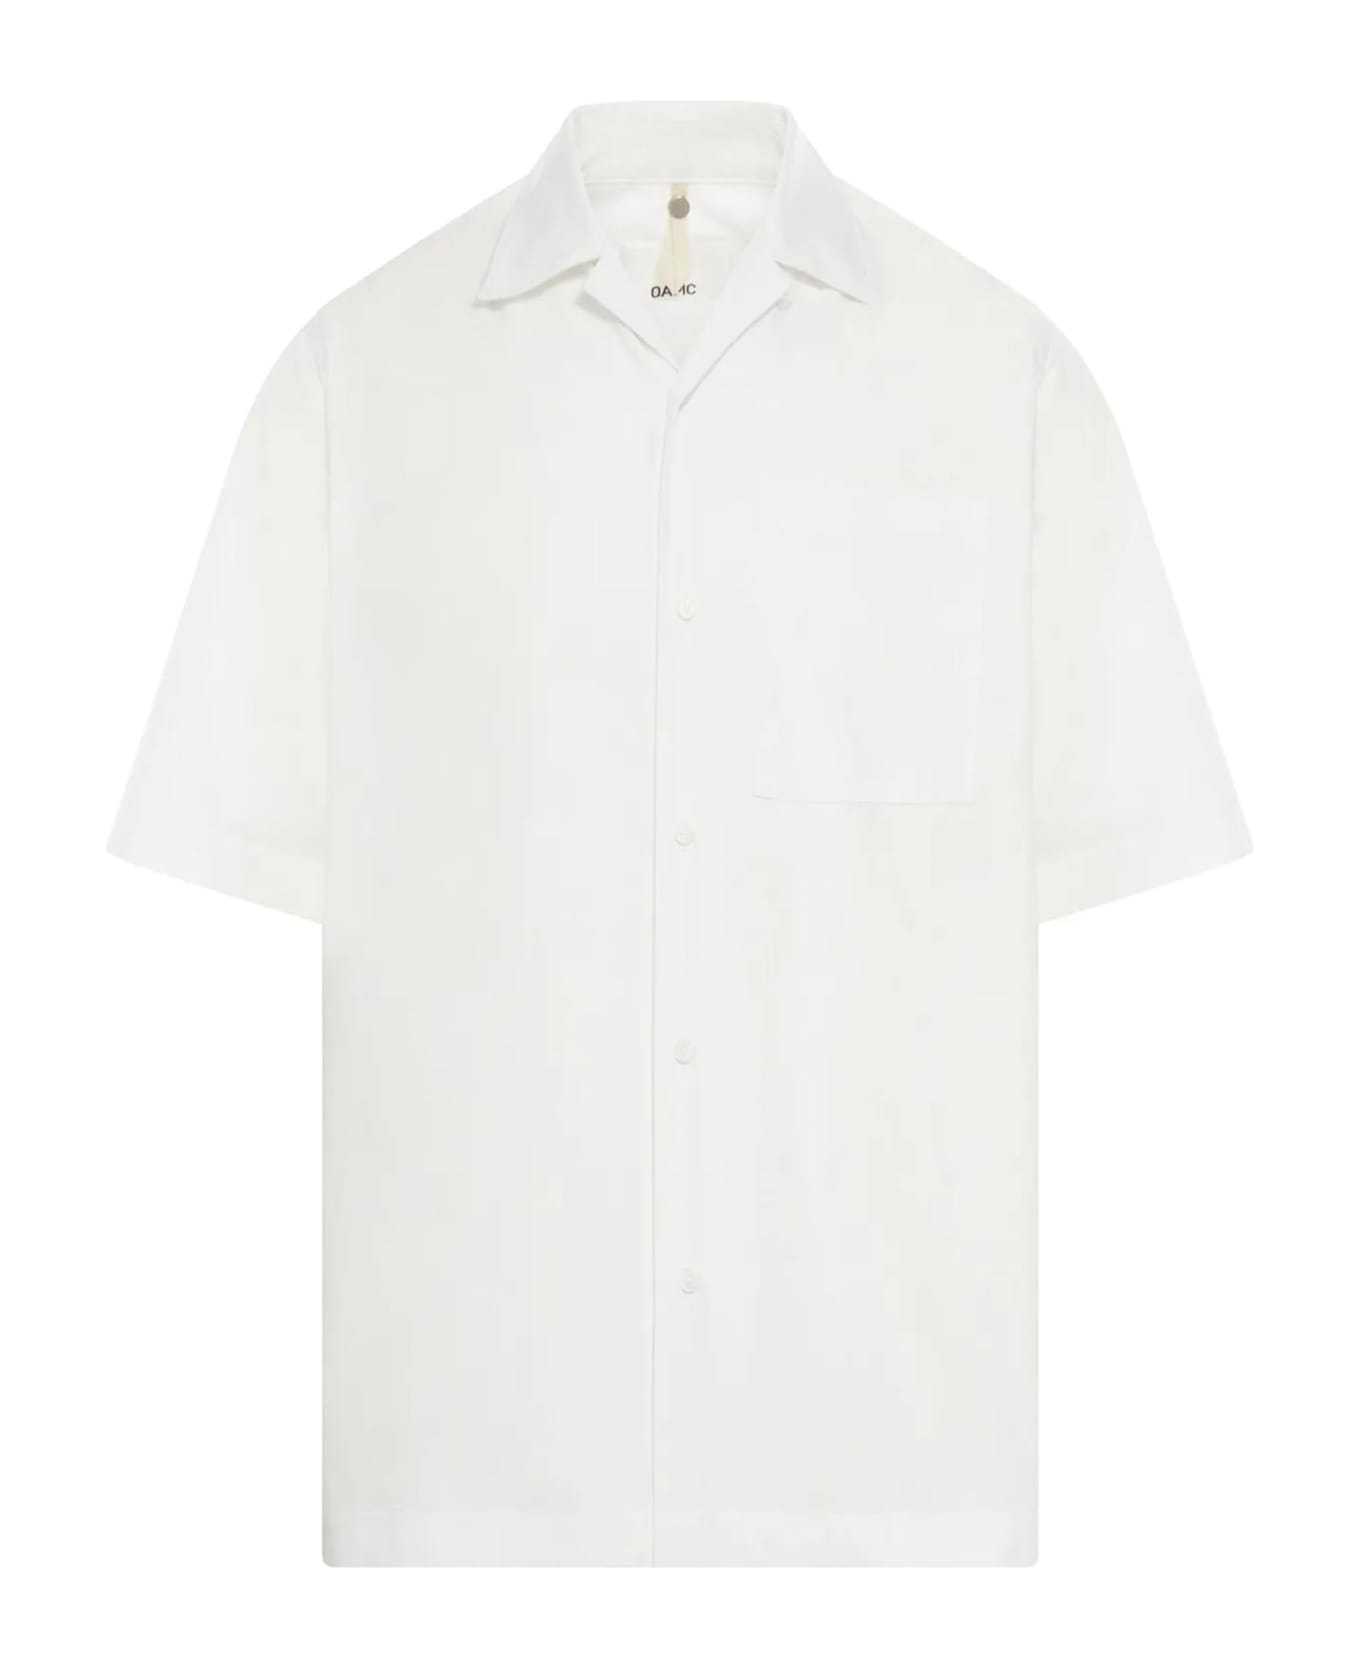 OAMC Shirts White - White シャツ